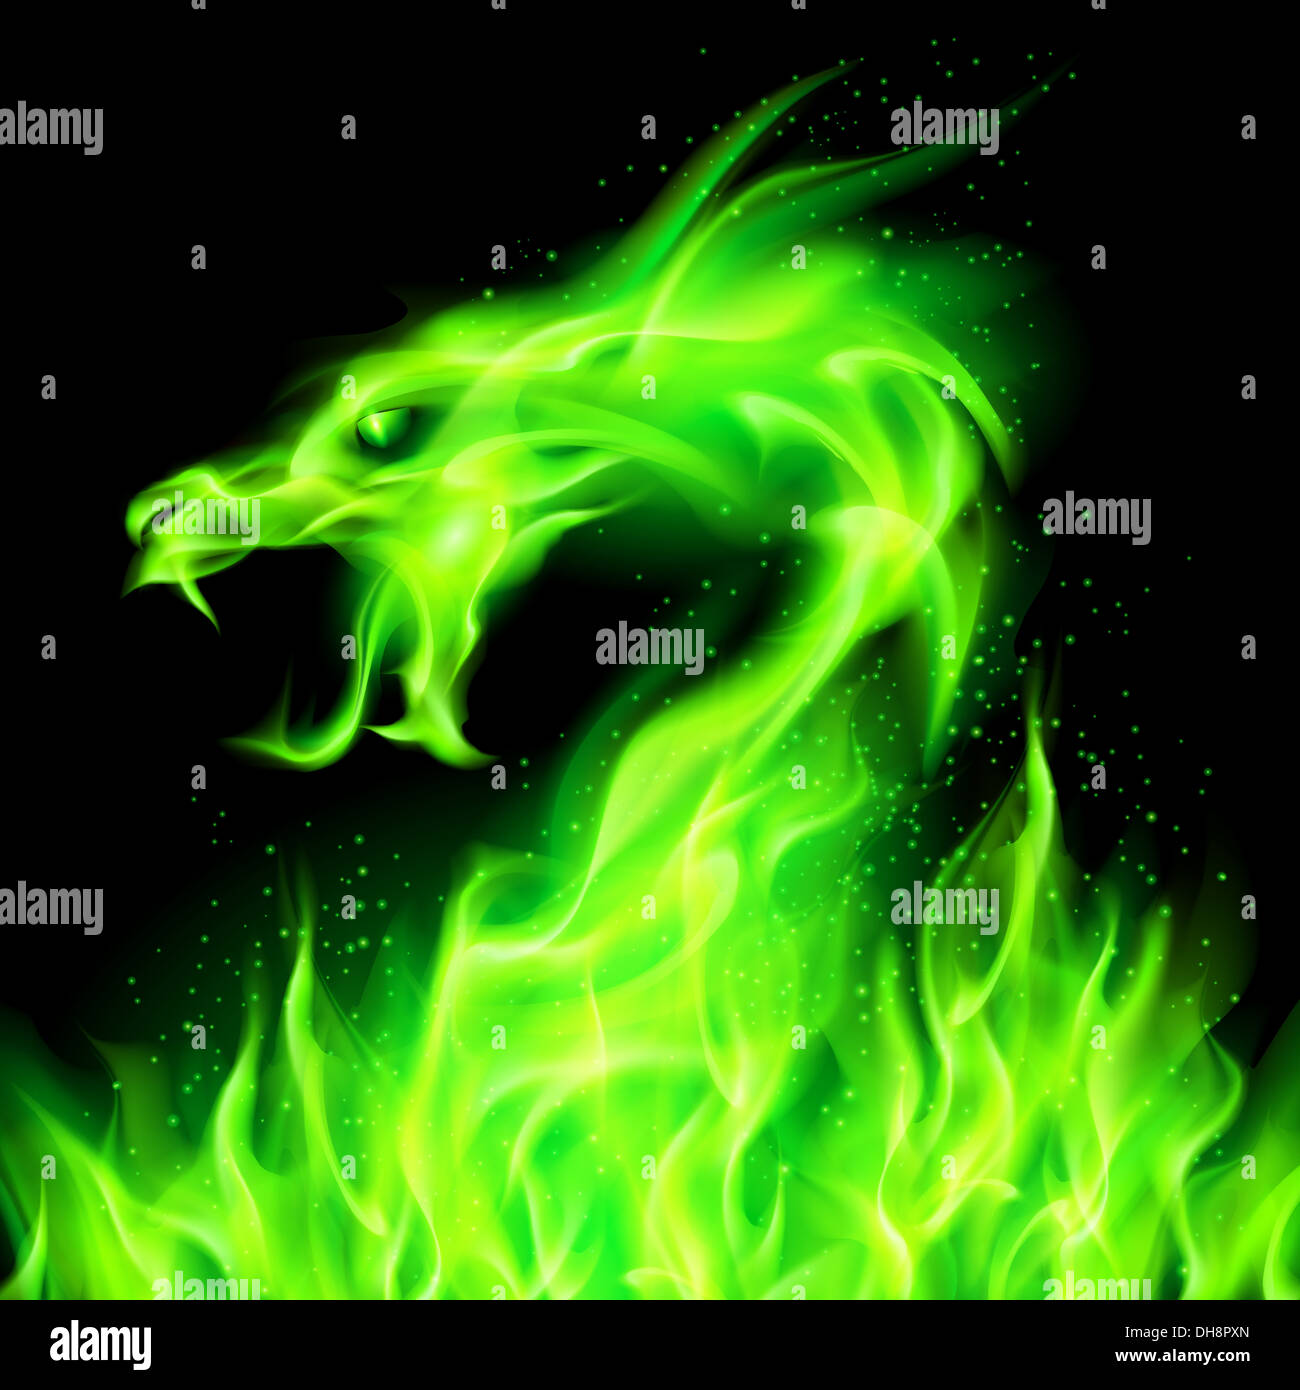 Feuer Spitze der Drache grün auf schwarzem Hintergrund Stockfotografie -  Alamy